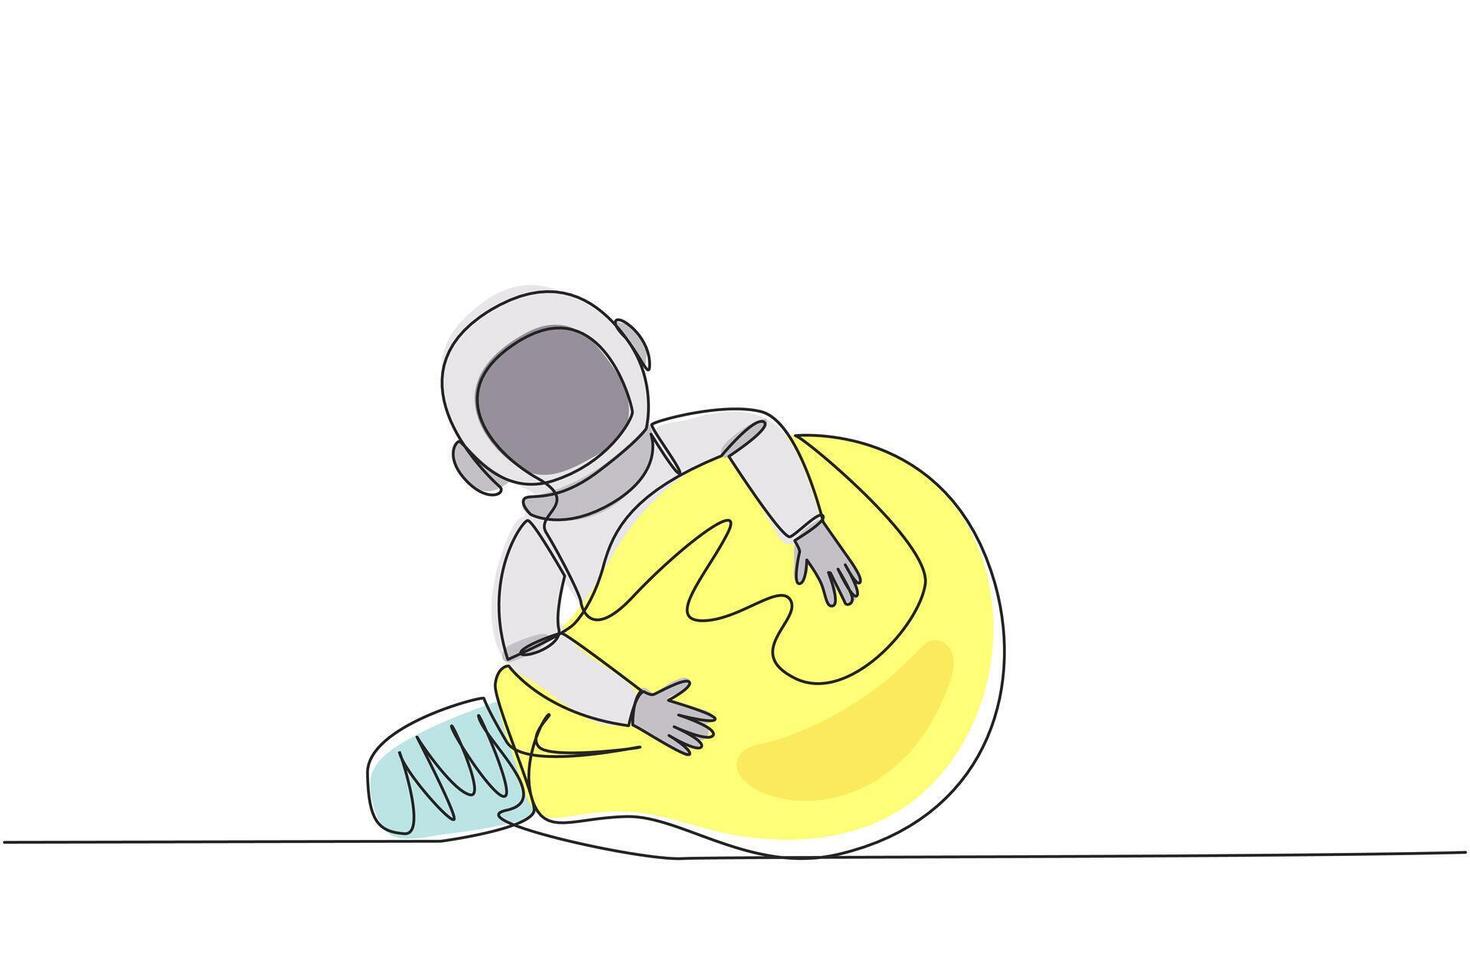 soltero continuo línea dibujo astronauta abrazando bombilla. astronauta construir el primero procesamiento de datos robot a facilitar buscar para agua y hielo en lunar superficie. uno línea diseño vector ilustración